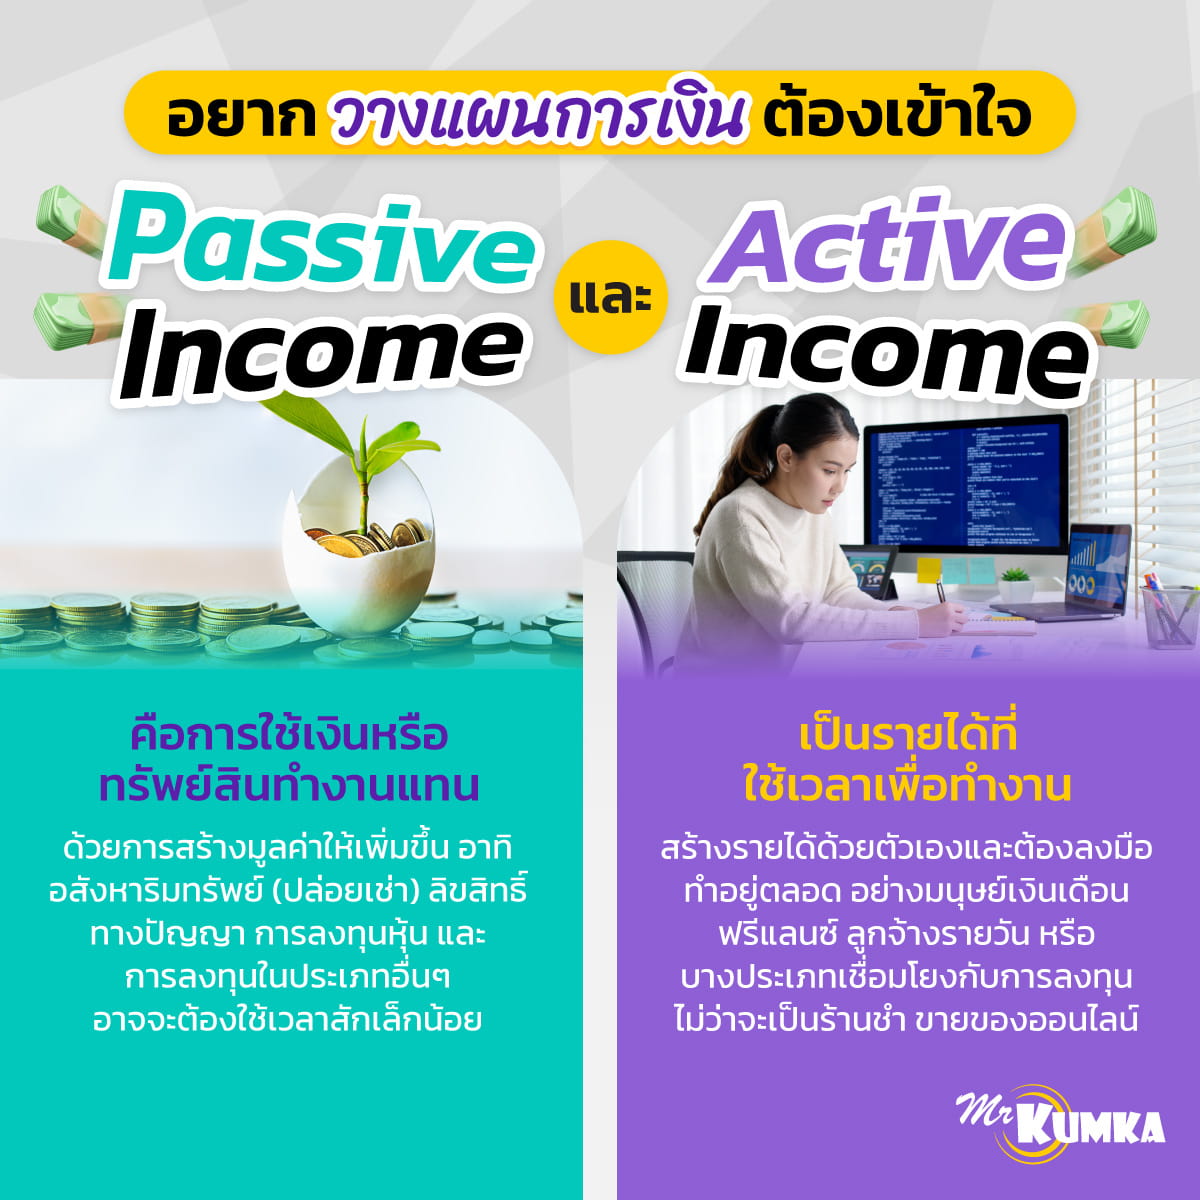 เข้าใจความต่างของ Passive income กับ Active income